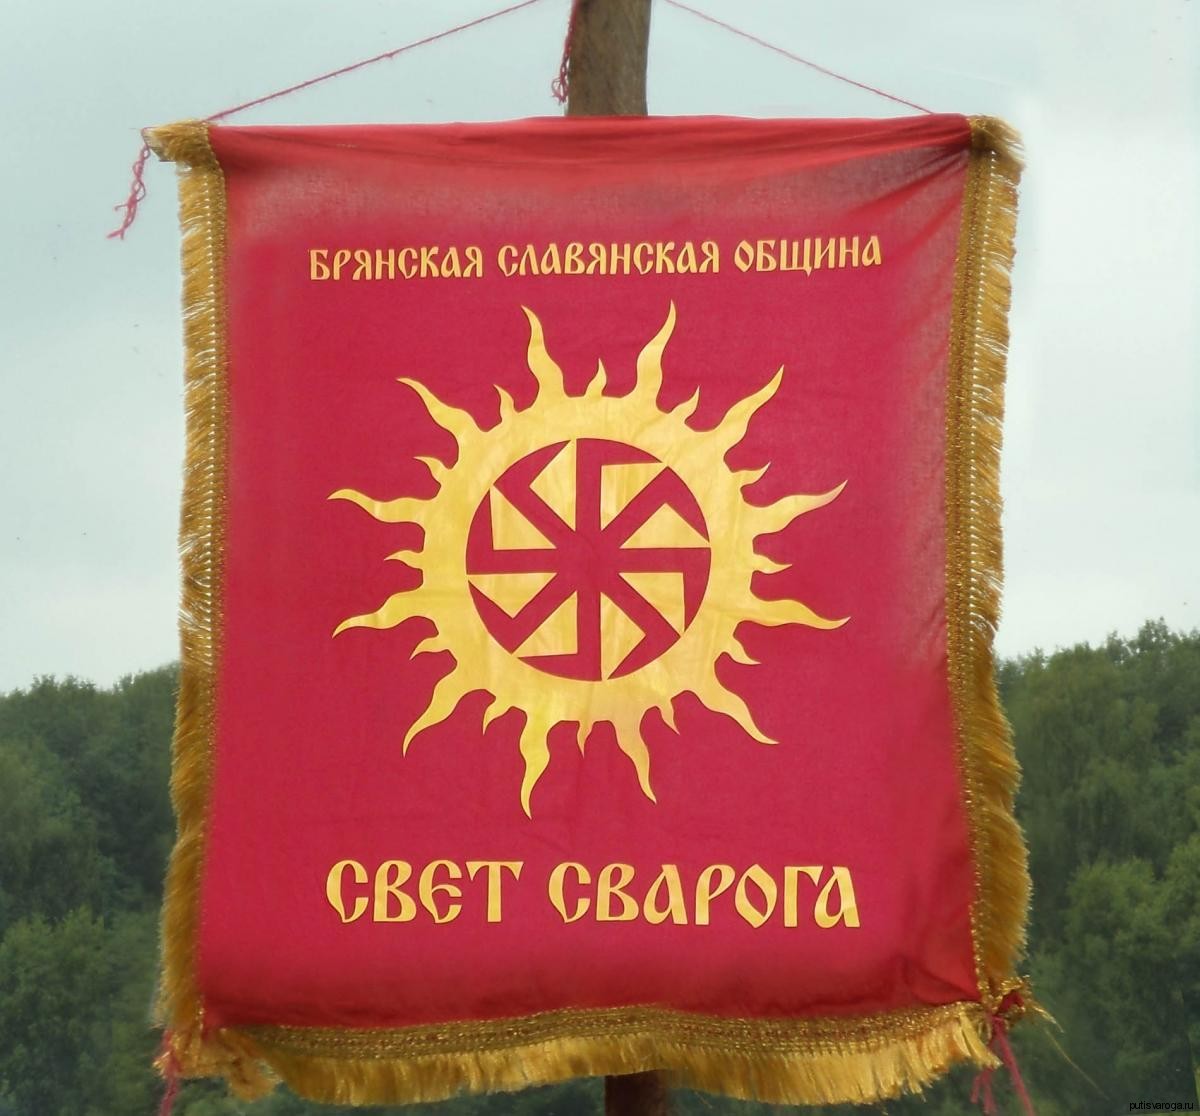 Брянская языческая славянская община «Свет Сварога»